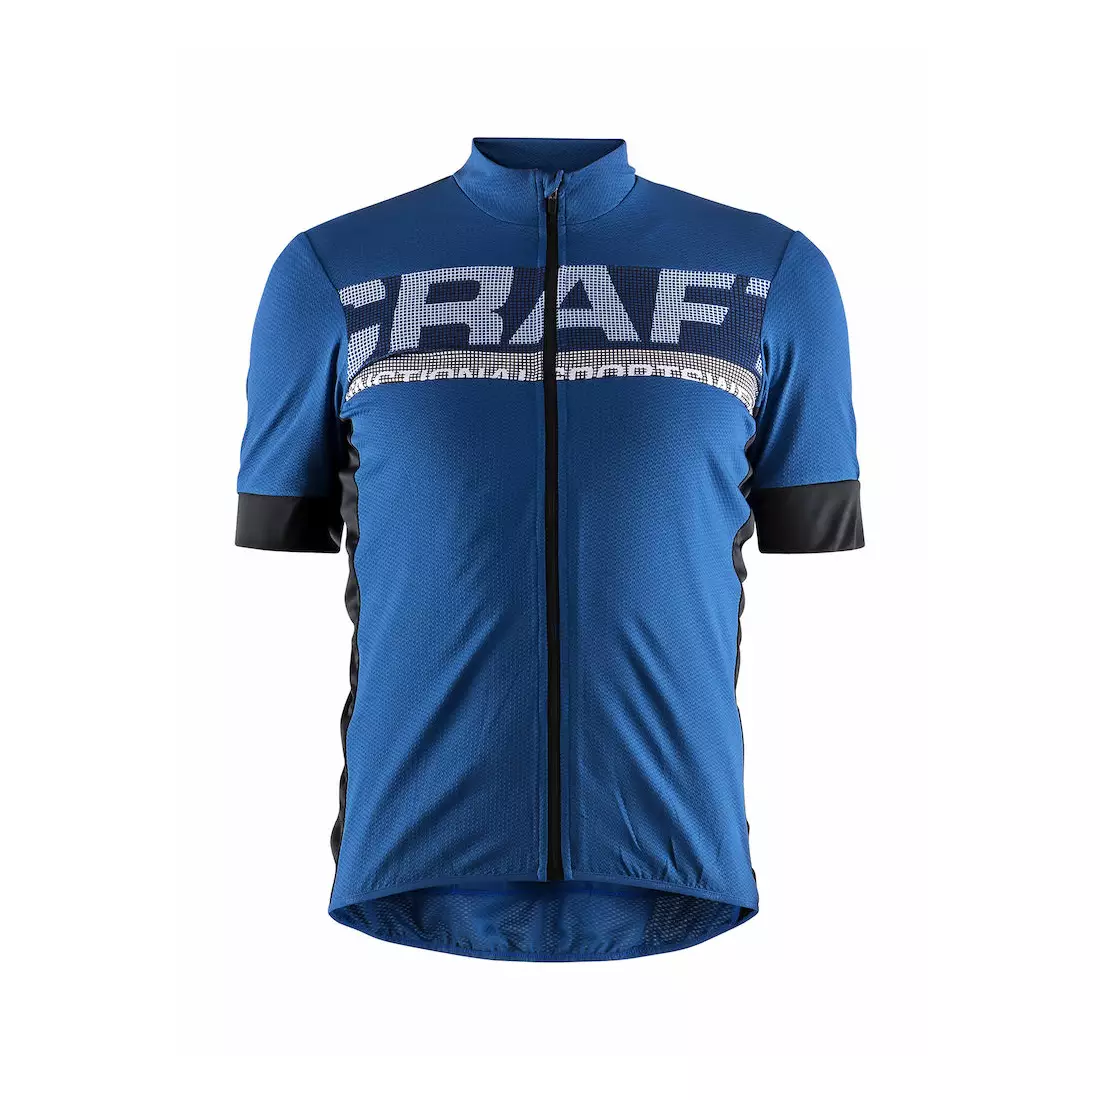 CRAFT REEL pánský cyklistický dres, modrý 1906096-367999